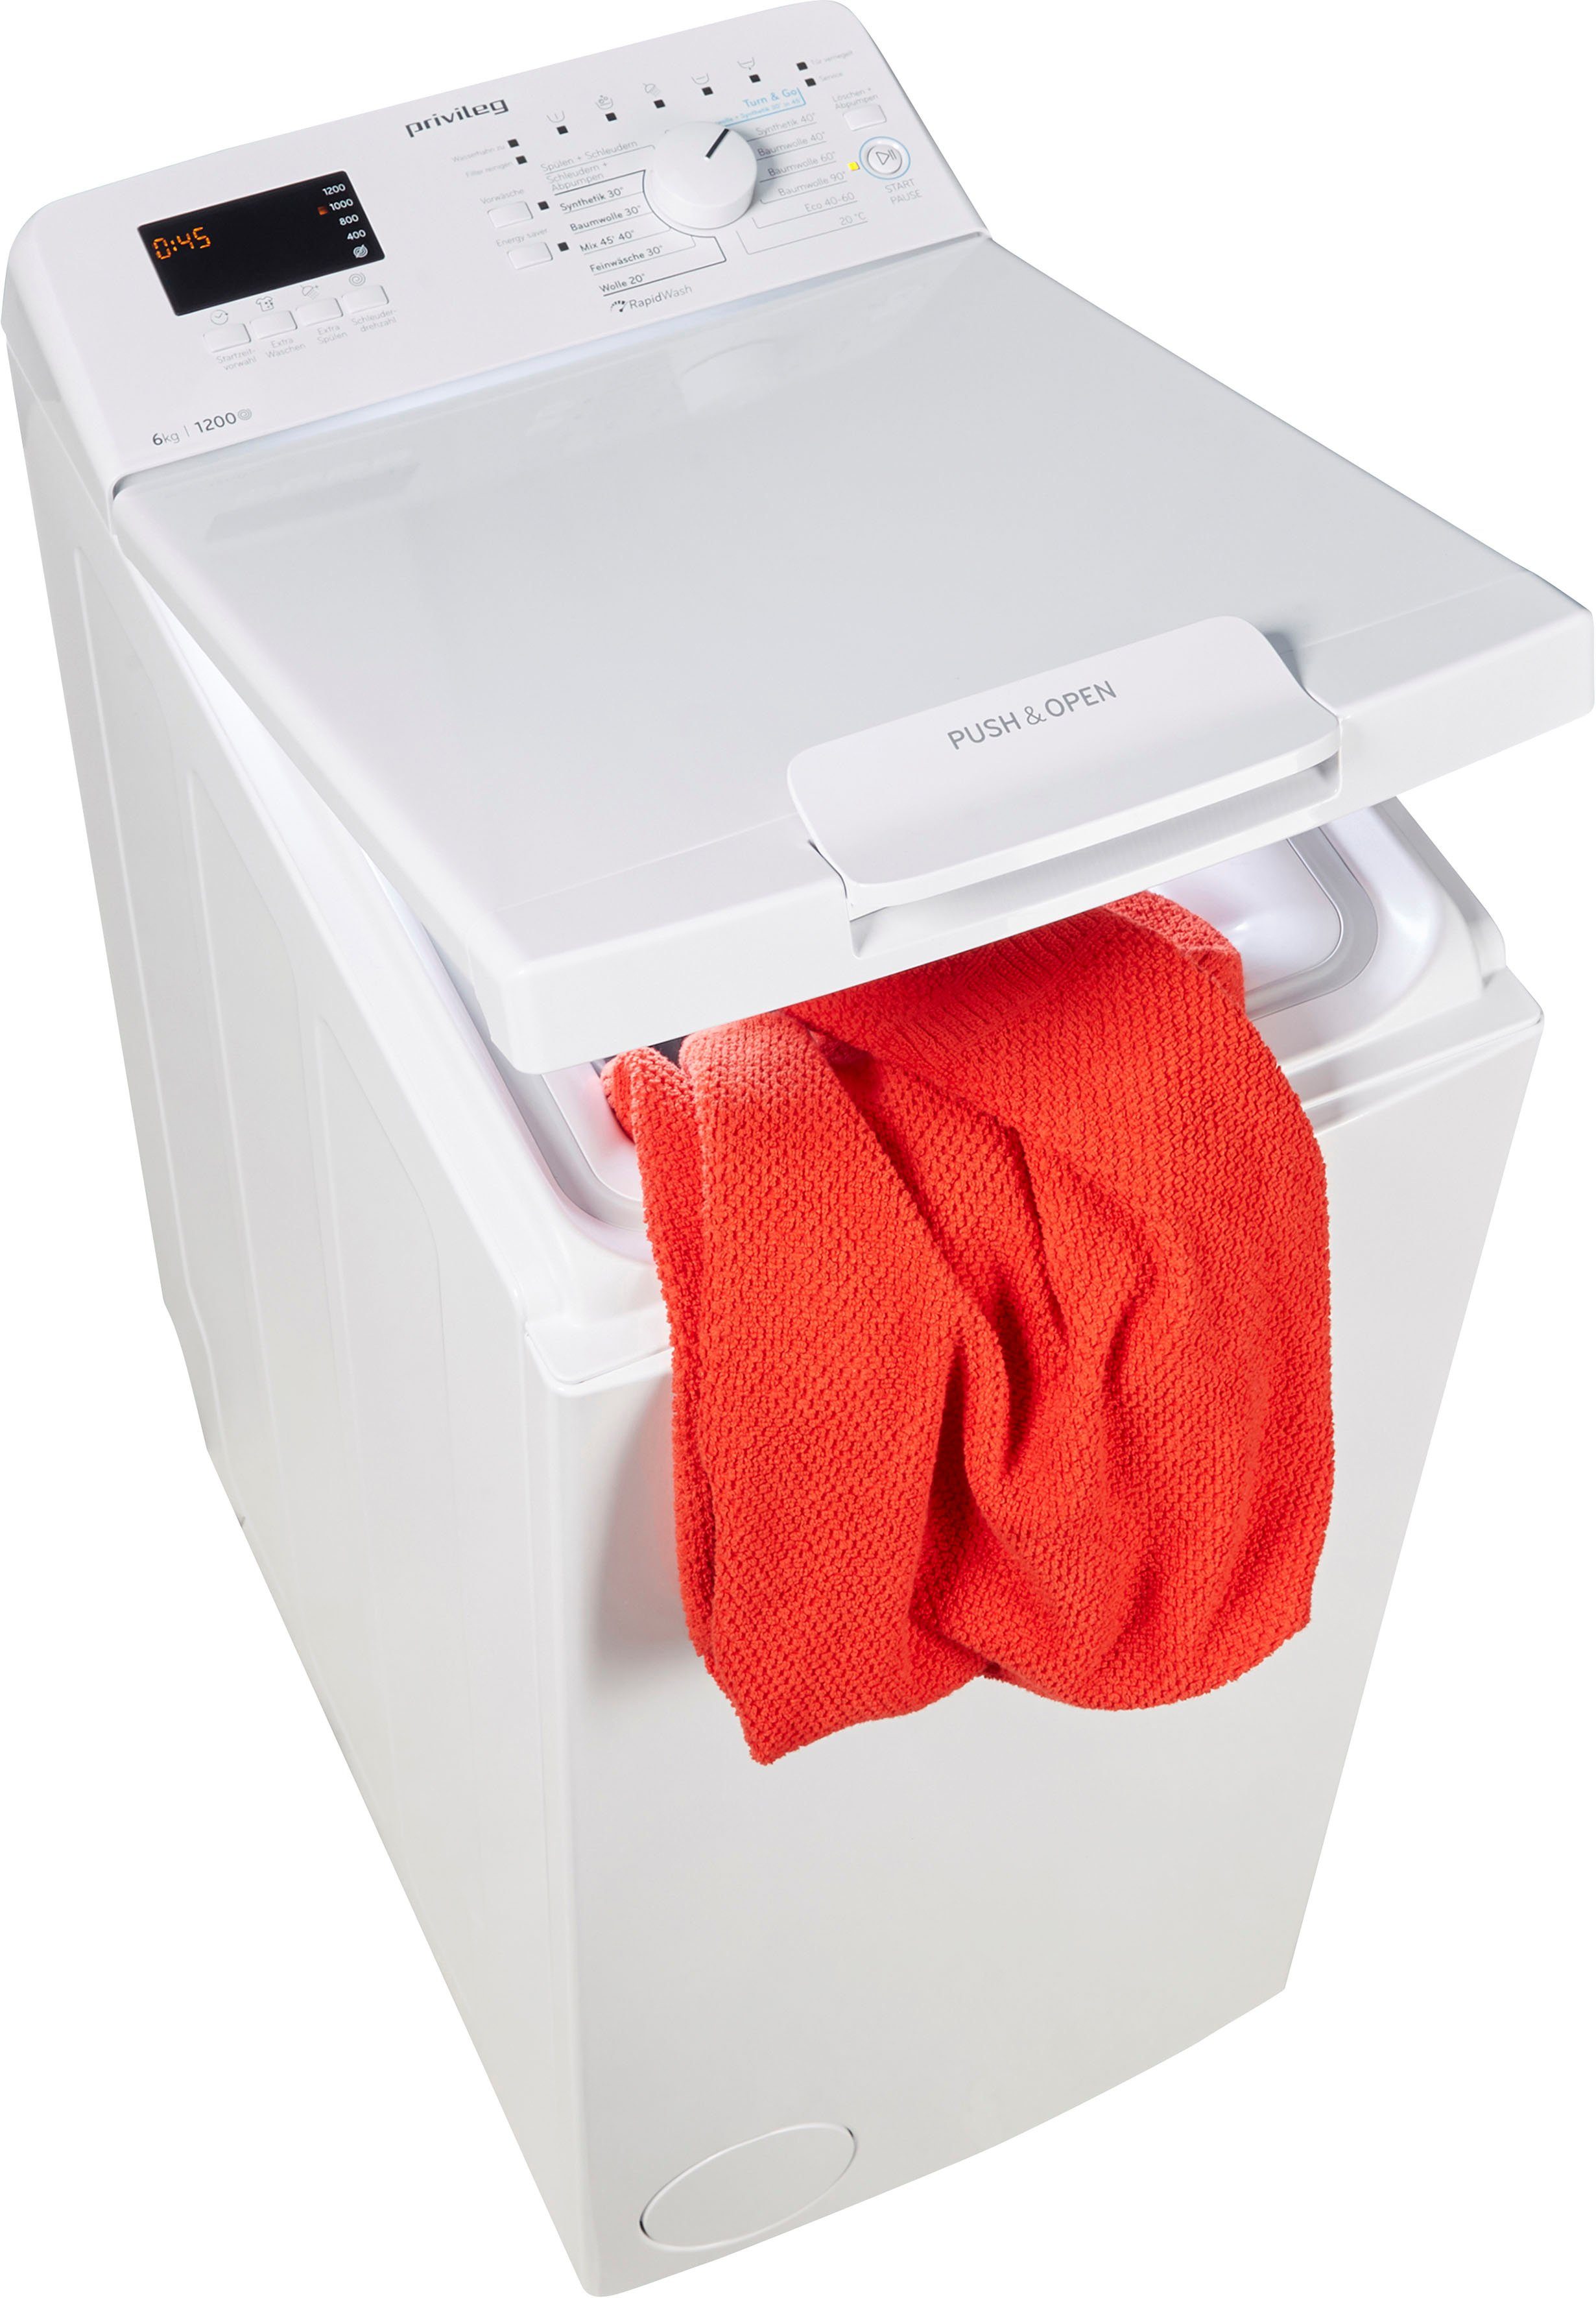 Waschmaschine Toplader Privileg Herstellergarantie kg, 1200 PWT 6 50 Monate N, U/min, C623